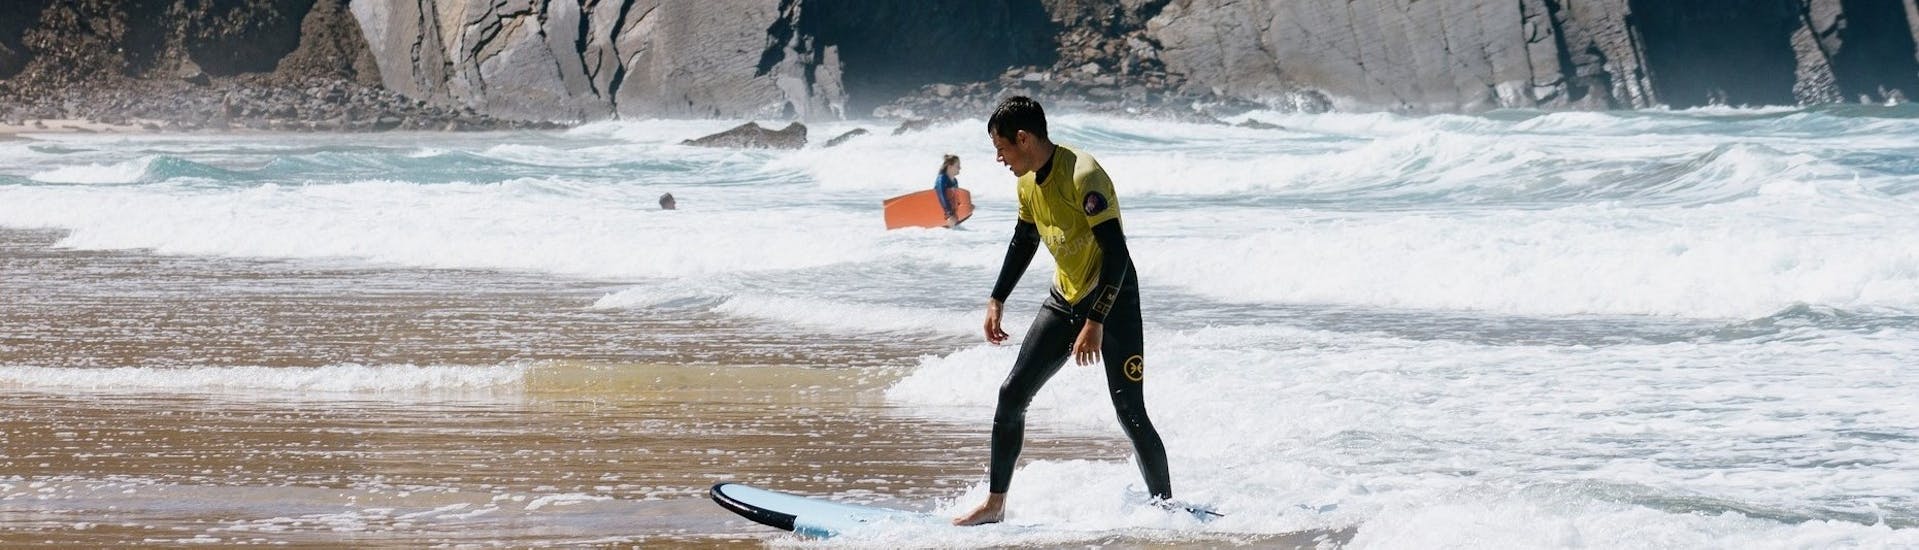 Persoon op surfplank tijdens Privé Surflessen (vanaf 6 j.) op Praia da Rocha van Future Eco Surf School.